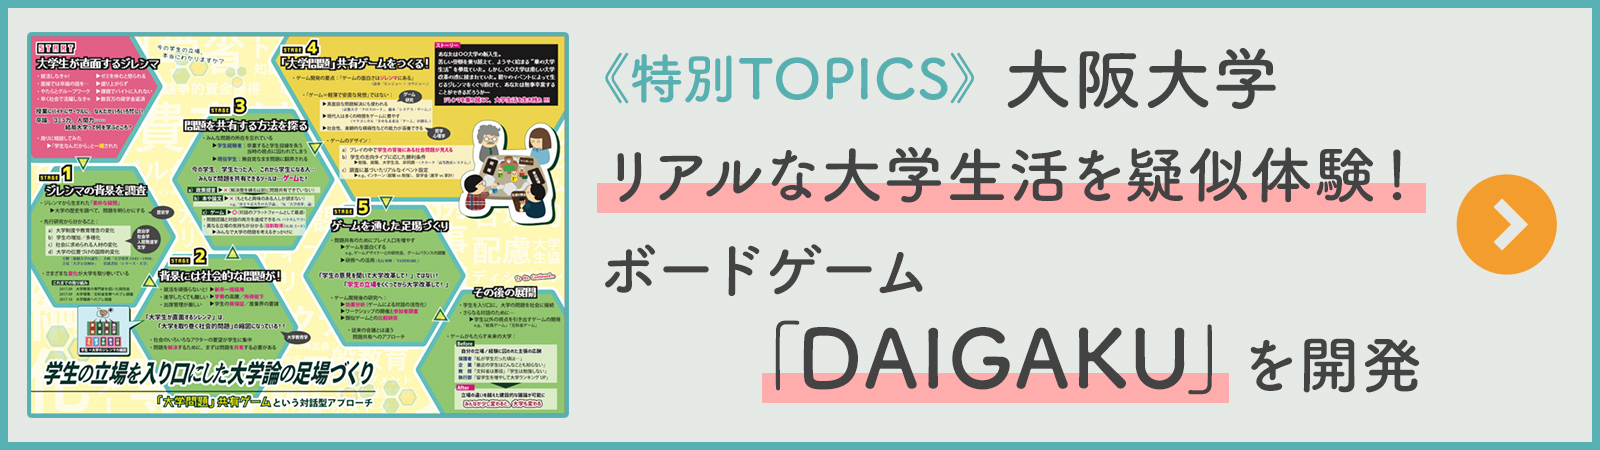 《特別TOPICS》大阪大学 リアルな大学生活を疑似体験！ボードゲーム「DAIGAKU」を開発